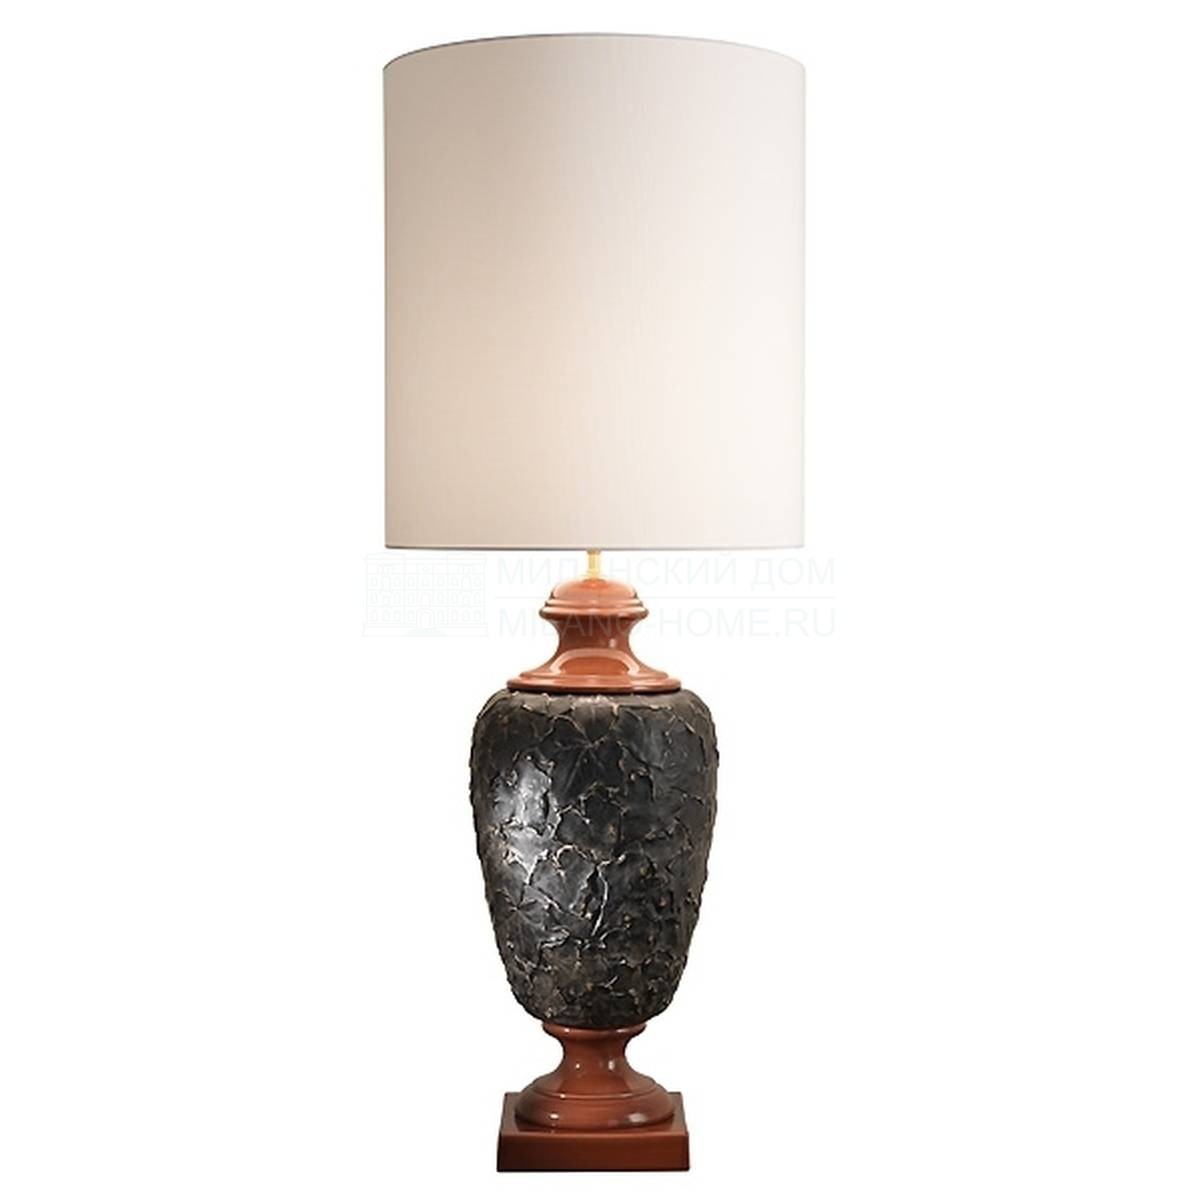 Настольная лампа Enya table lamp из Италии фабрики MARIONI